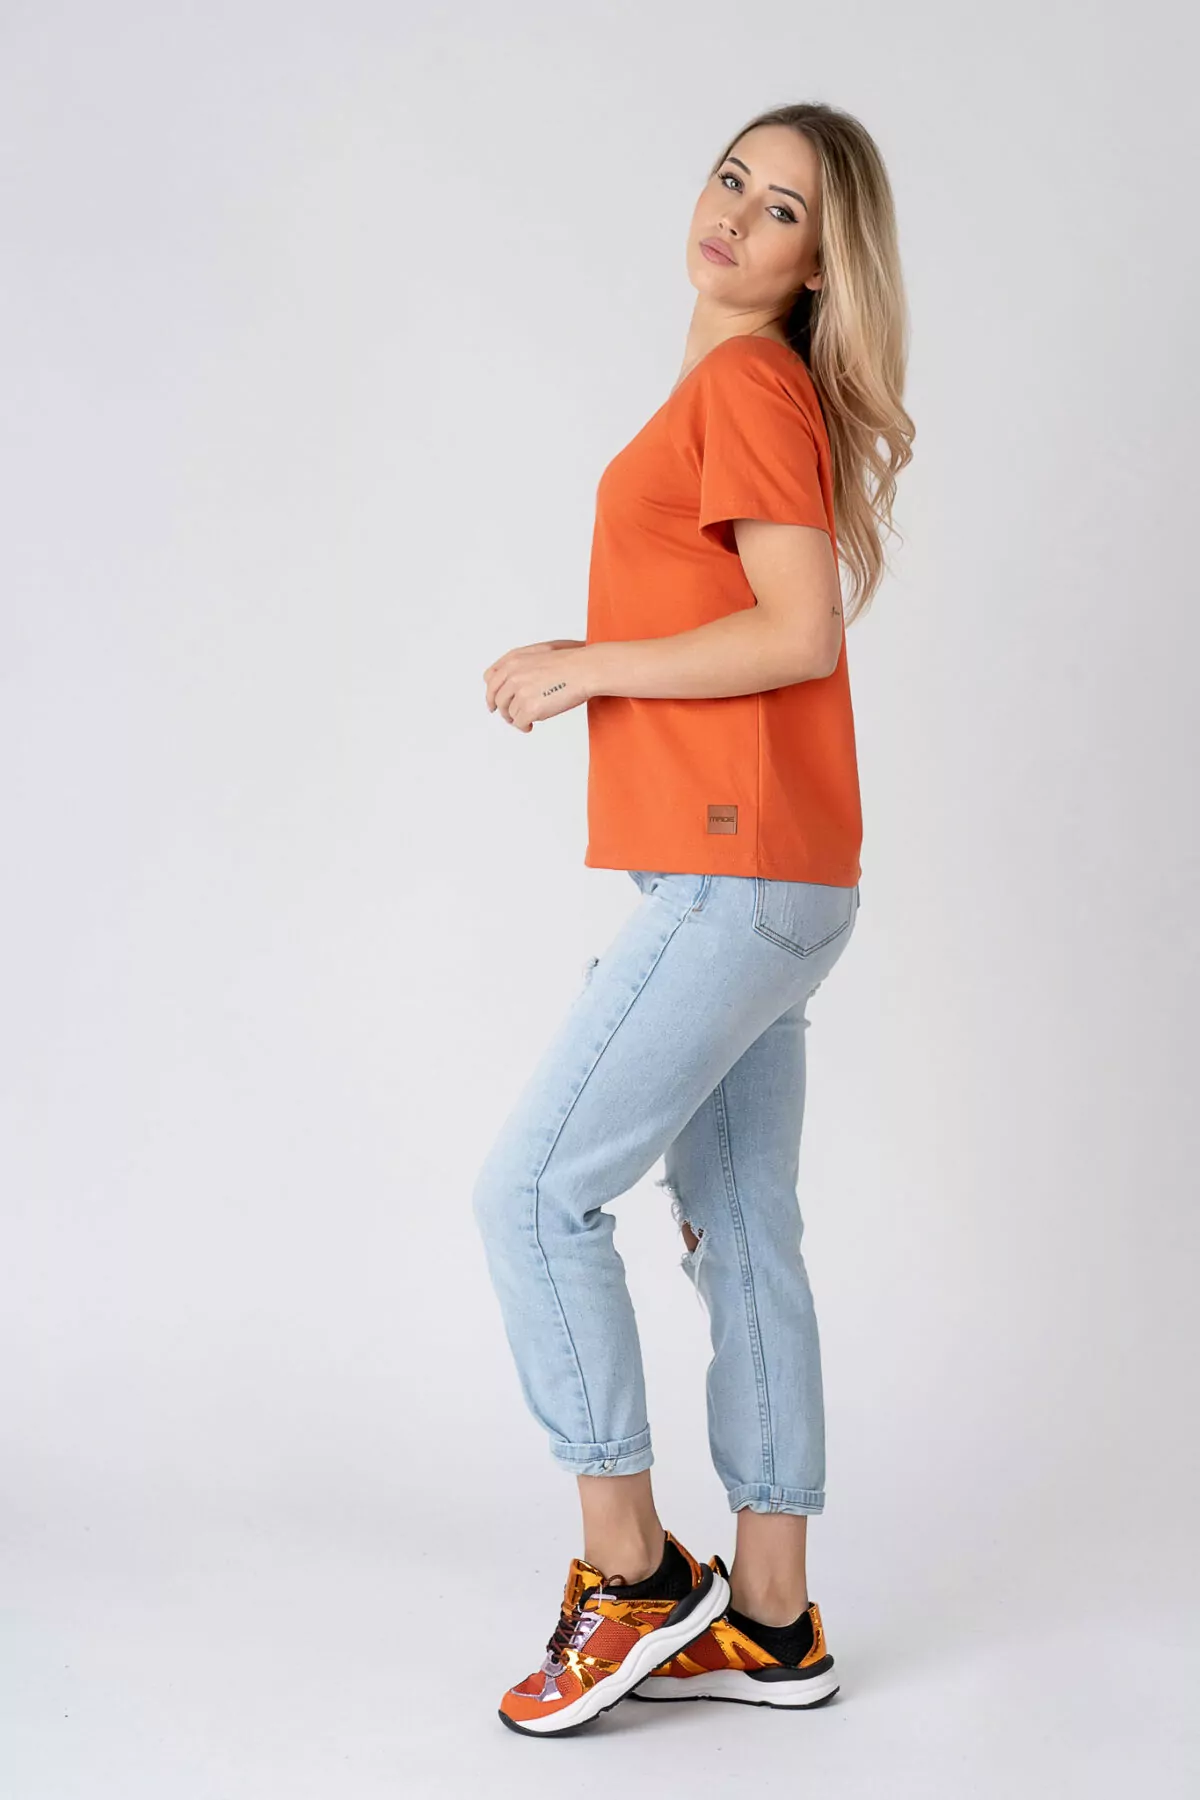 Bluzka damska koszulka pomarańcz bawełna